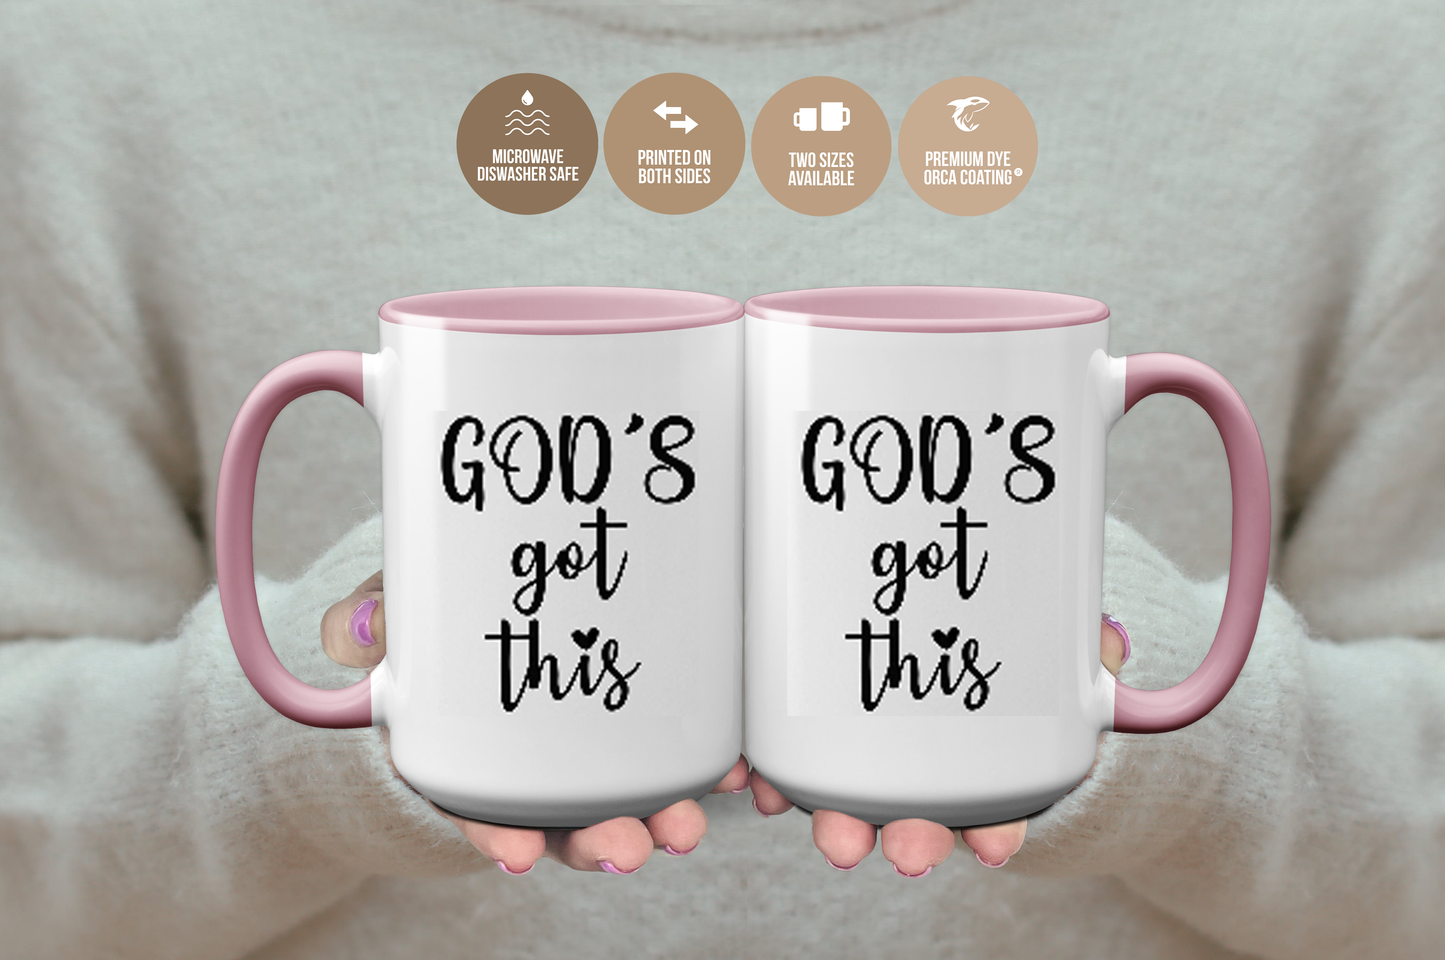 "God's Got This" Religious Inspired Mug